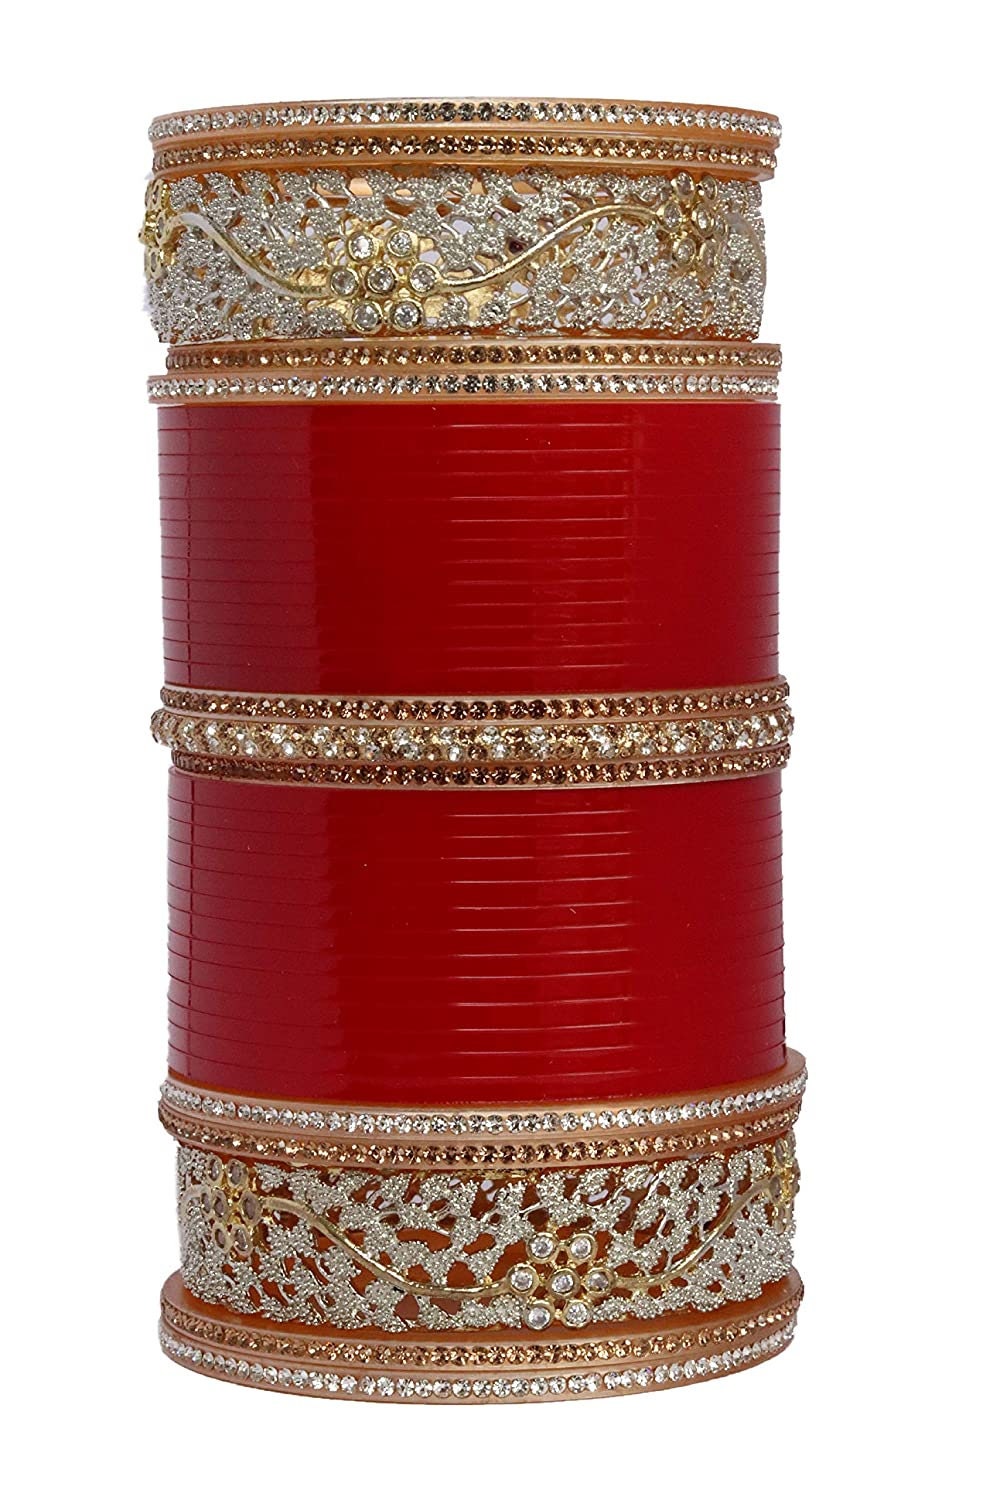 Traditional Bridal chura. punjabi traditional chuda. wedding bangles, Punjabi Choora, choora. bridal bangles, Chura, chuda set, chura set